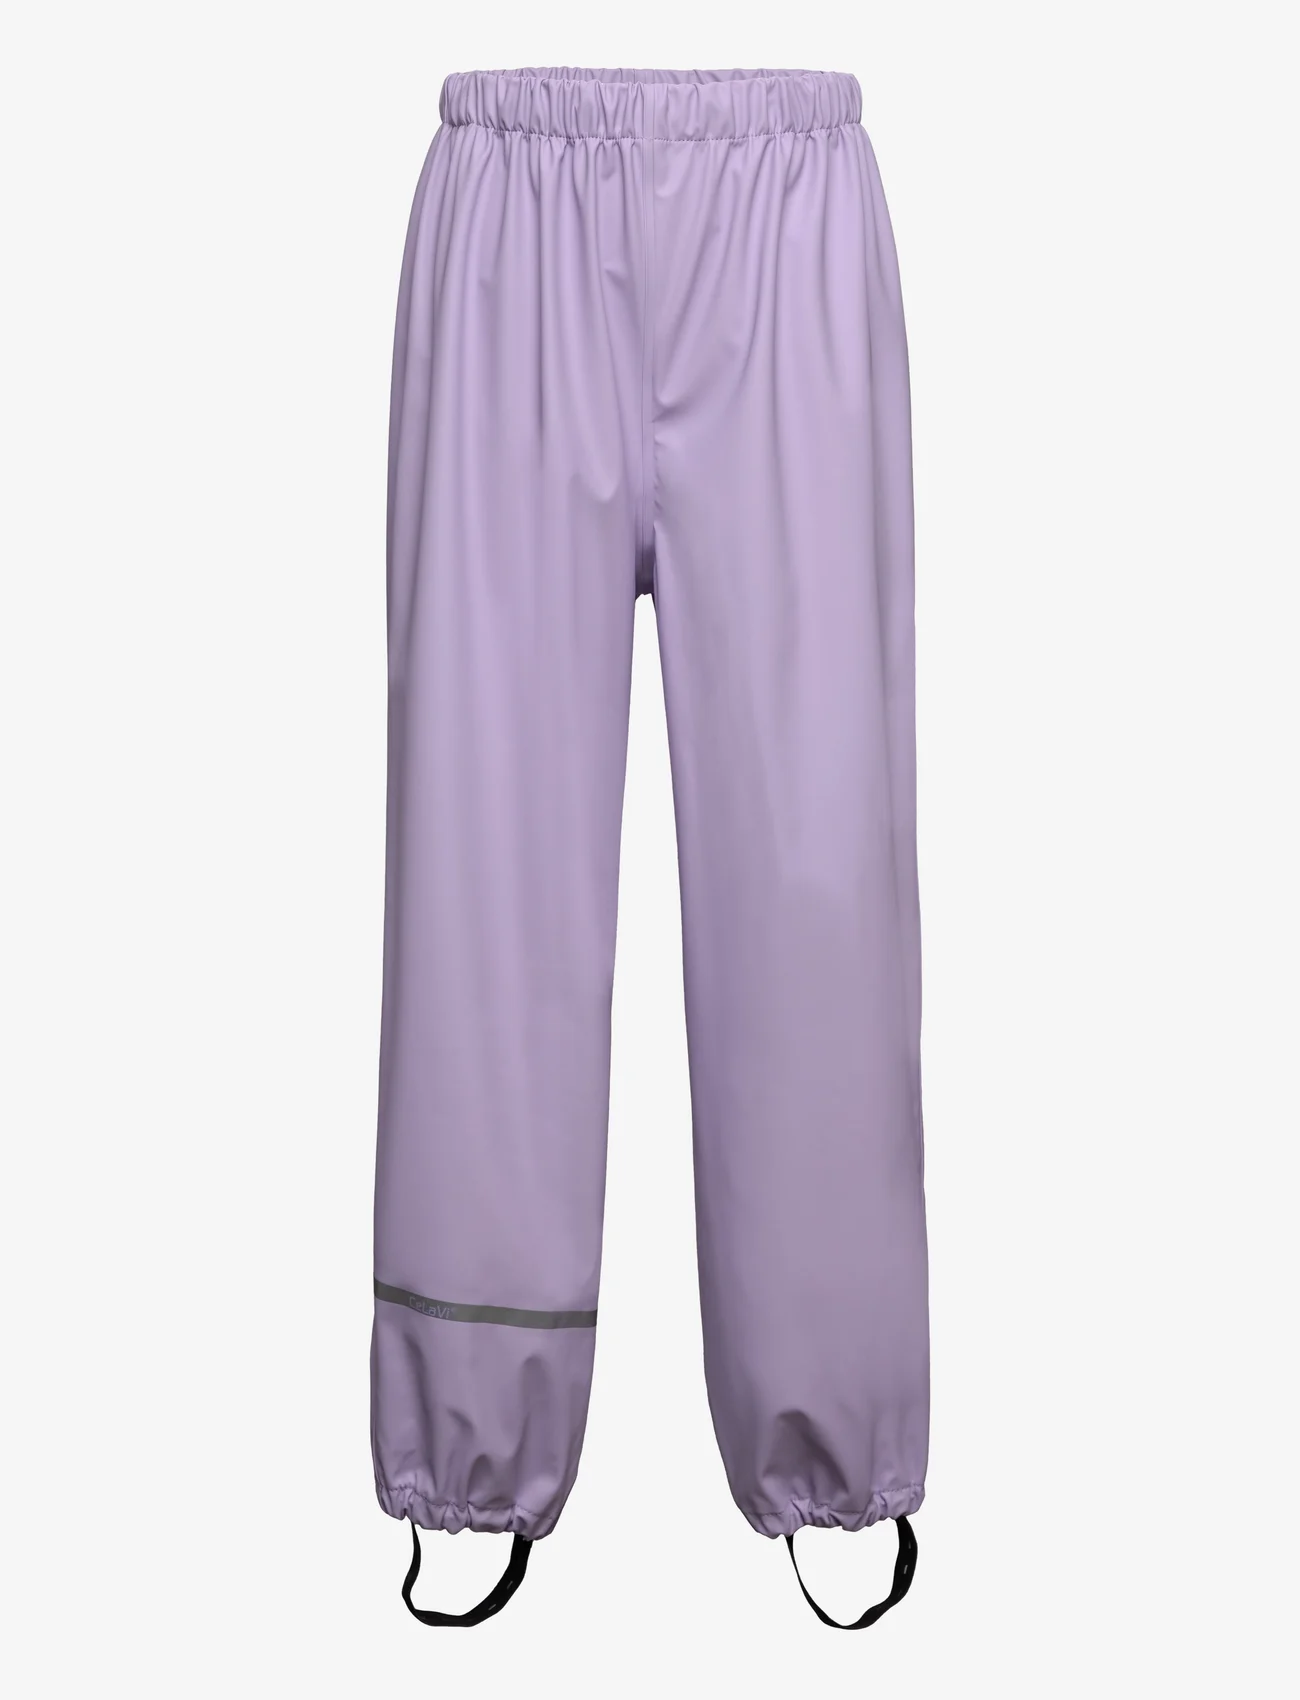 CeLaVi - Rainwear Pants - SOLID - madalaimad hinnad - purple rose - 0